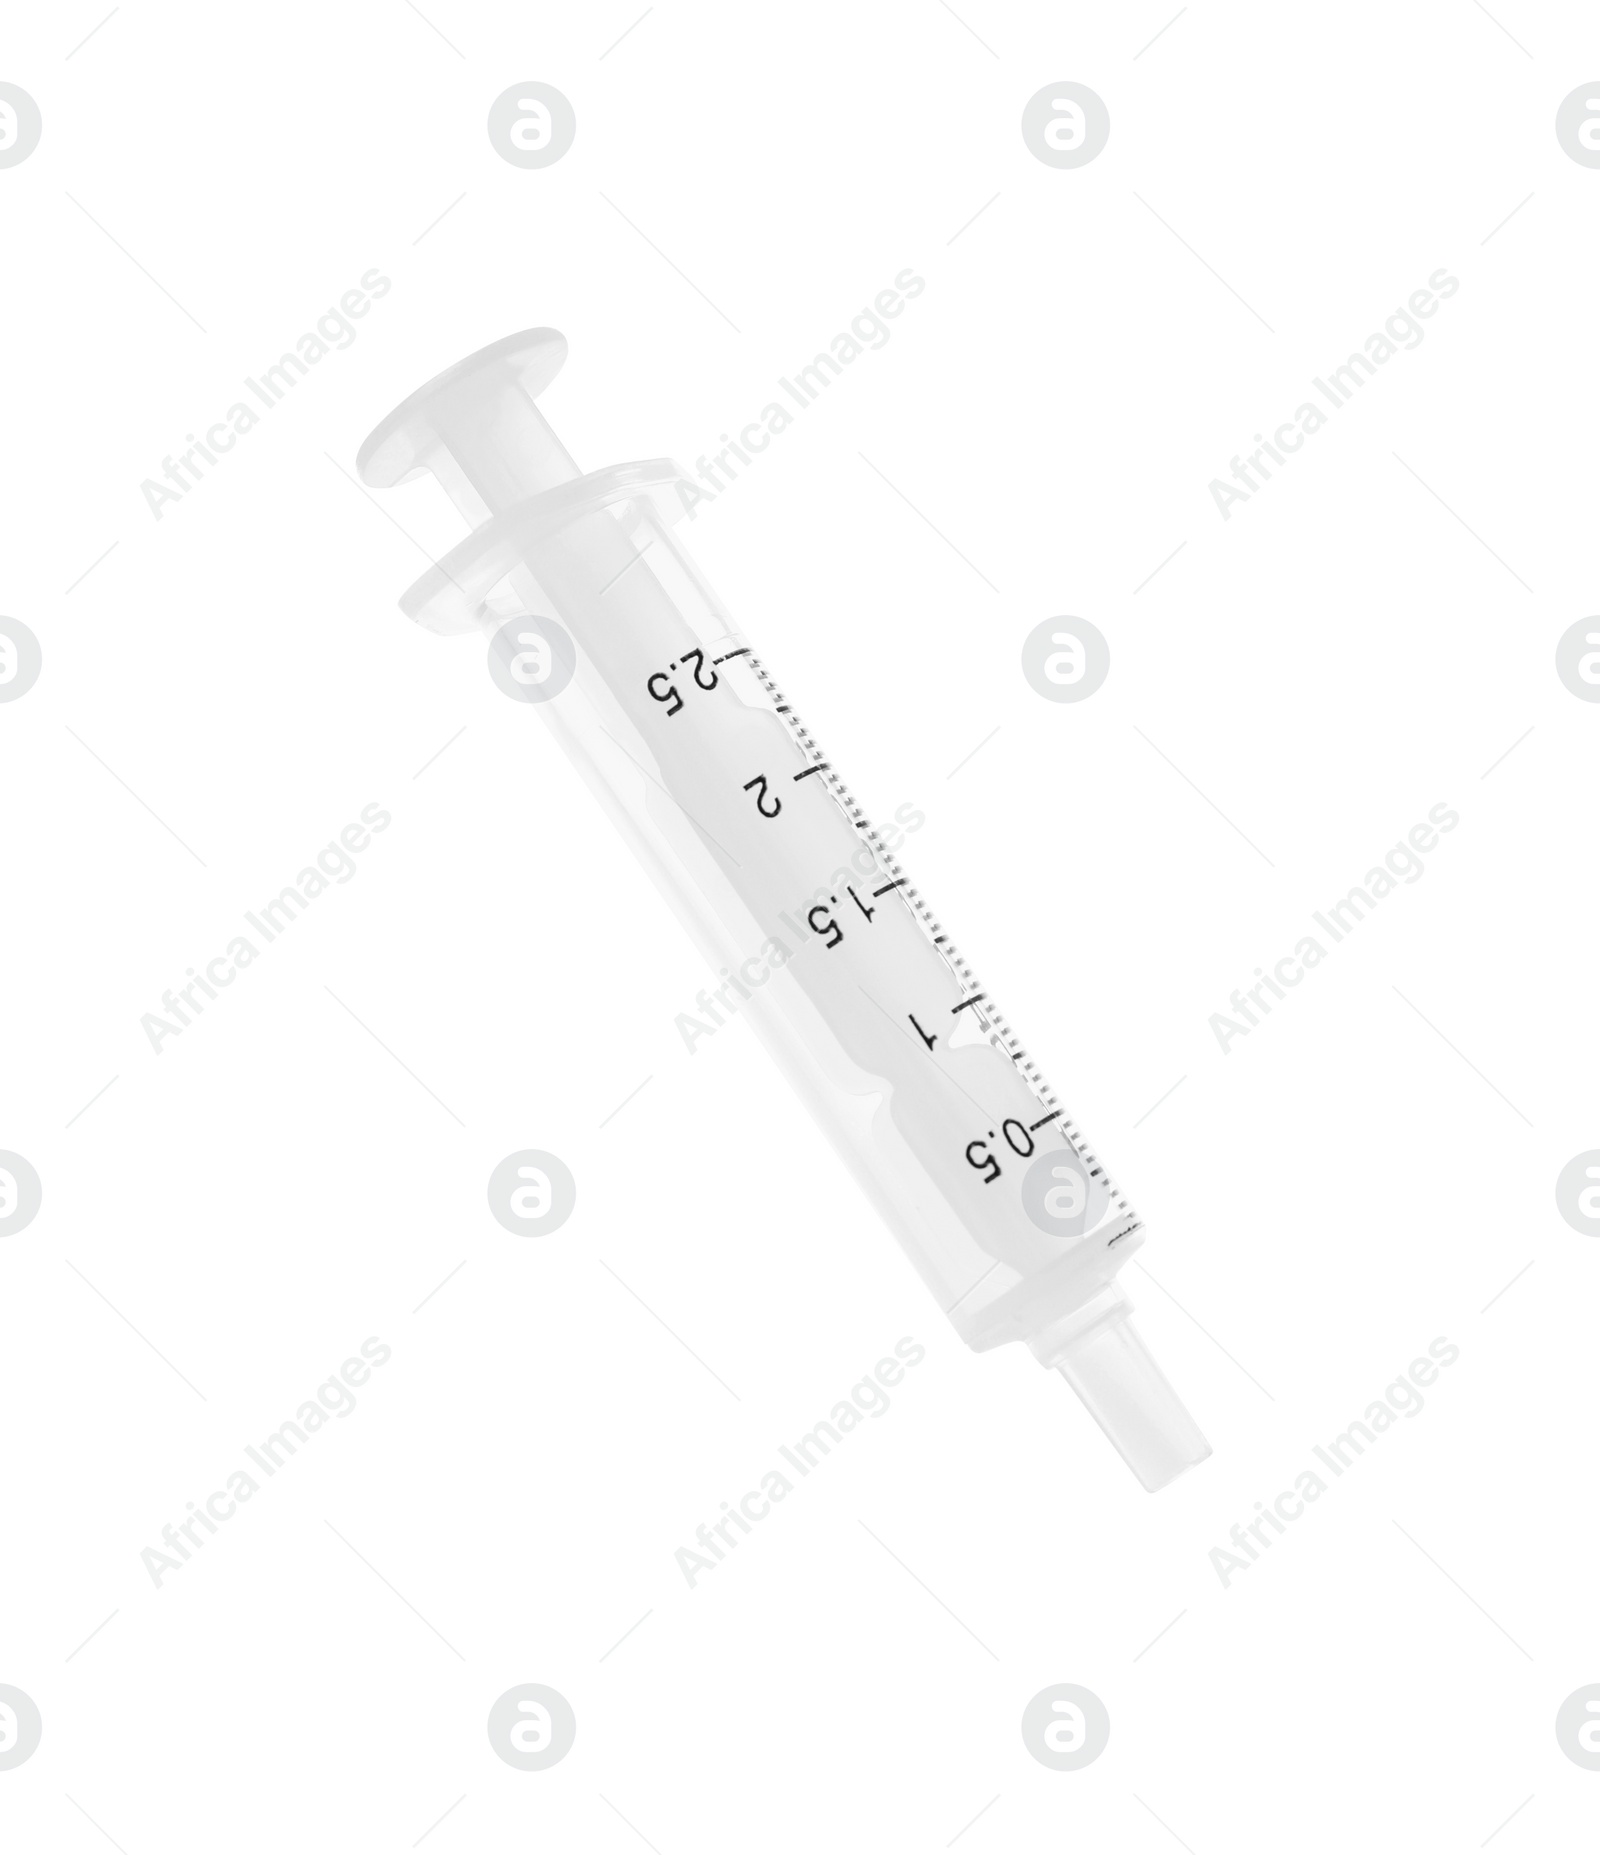 Photo of One new medical syringe isolated on white